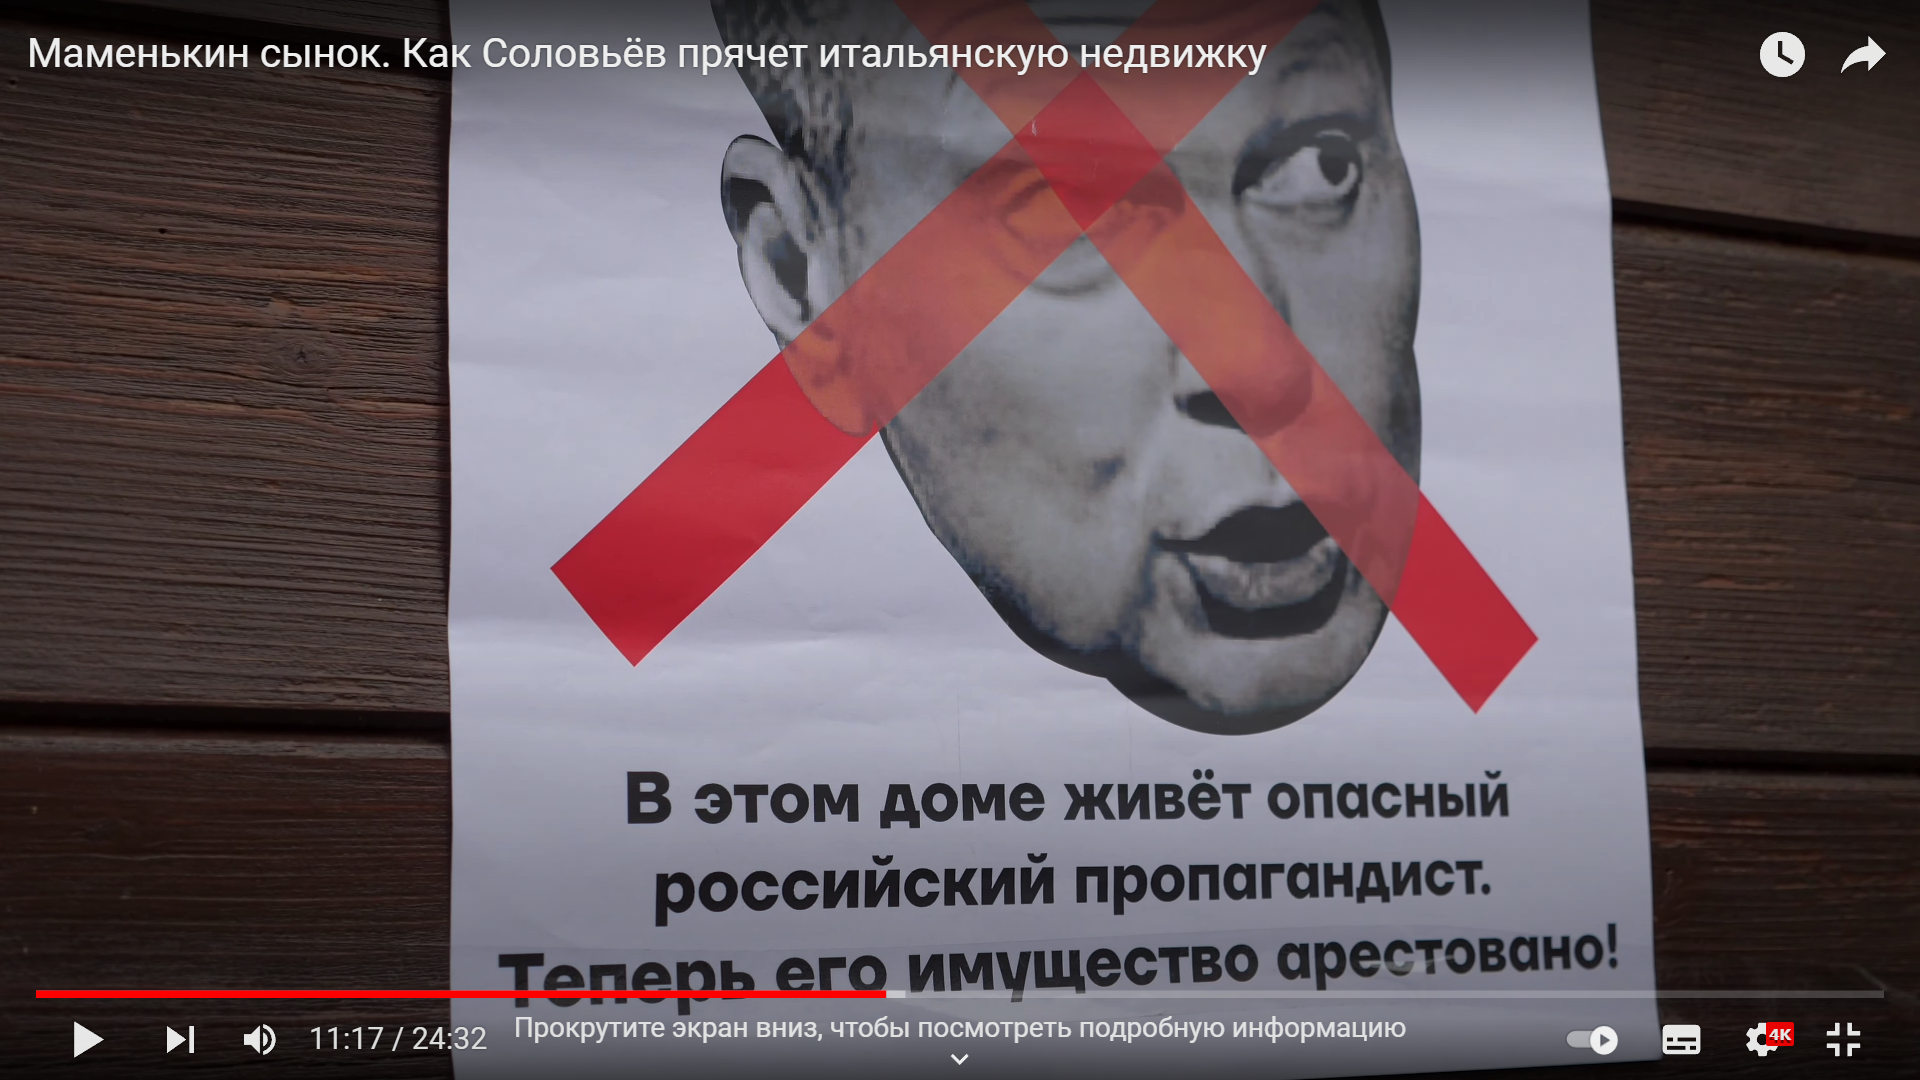 Плакат на дверях виллы, принадлежащей Владимиру Соловьеву. Скриншот из YouTube-канала «Популярная политика»